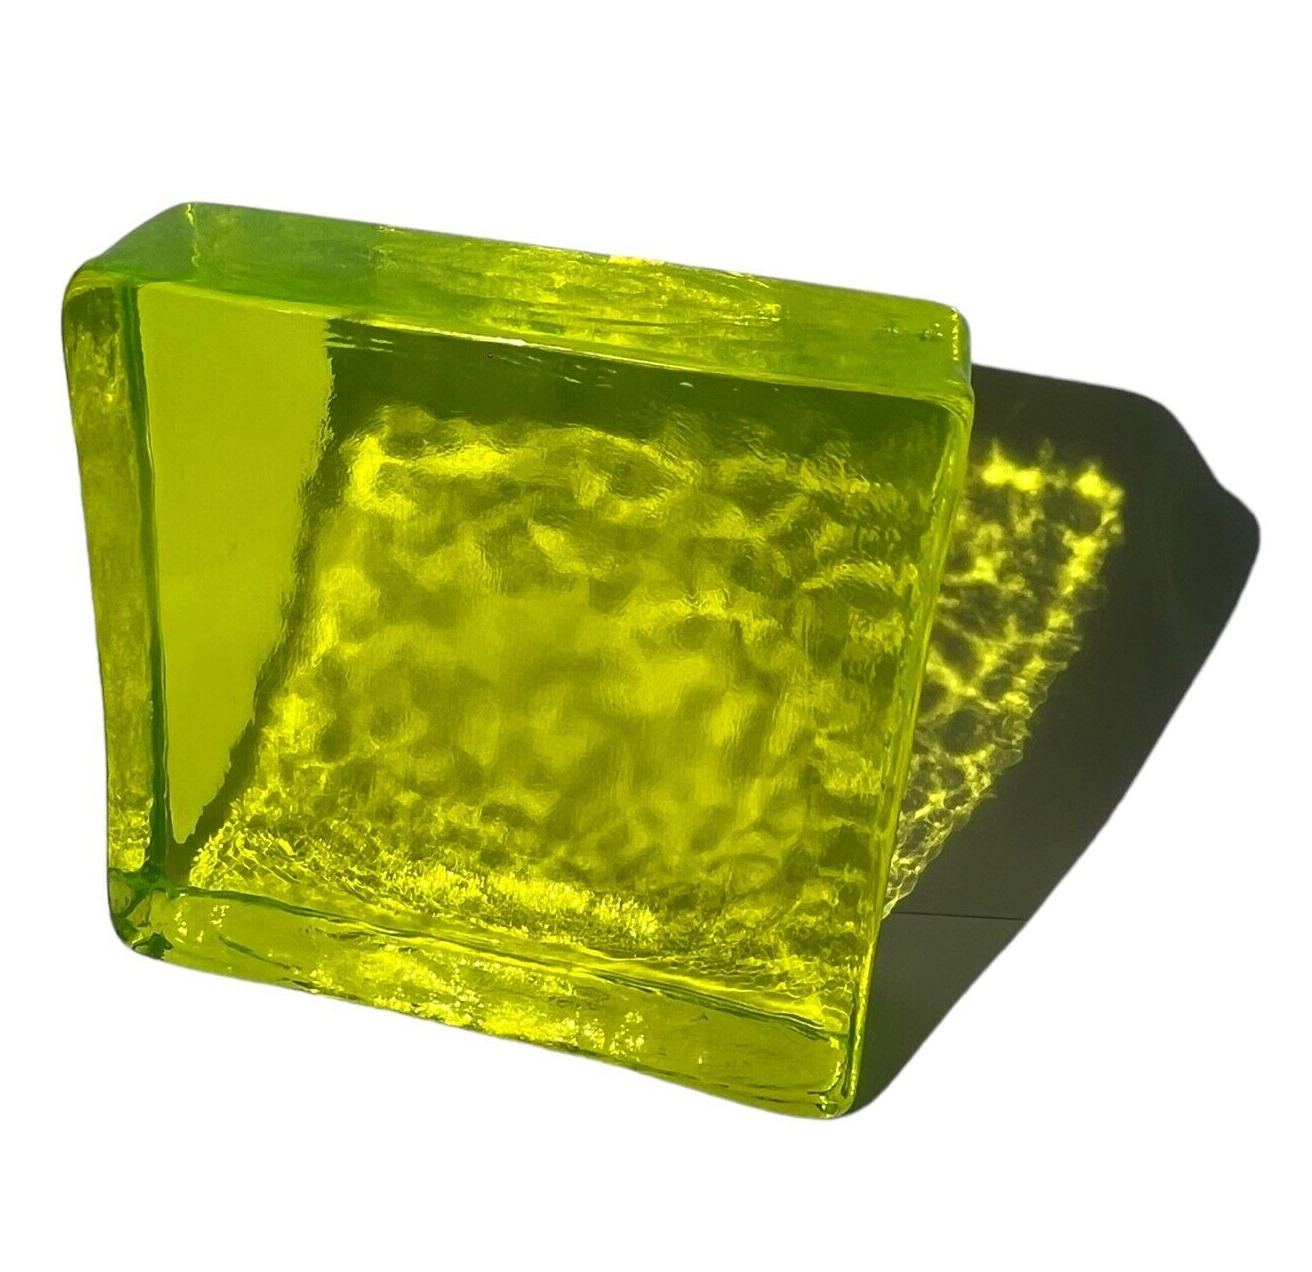 Optic vaseline / uranium glass JS-19 piece 79x79x23 mm as control source, decor